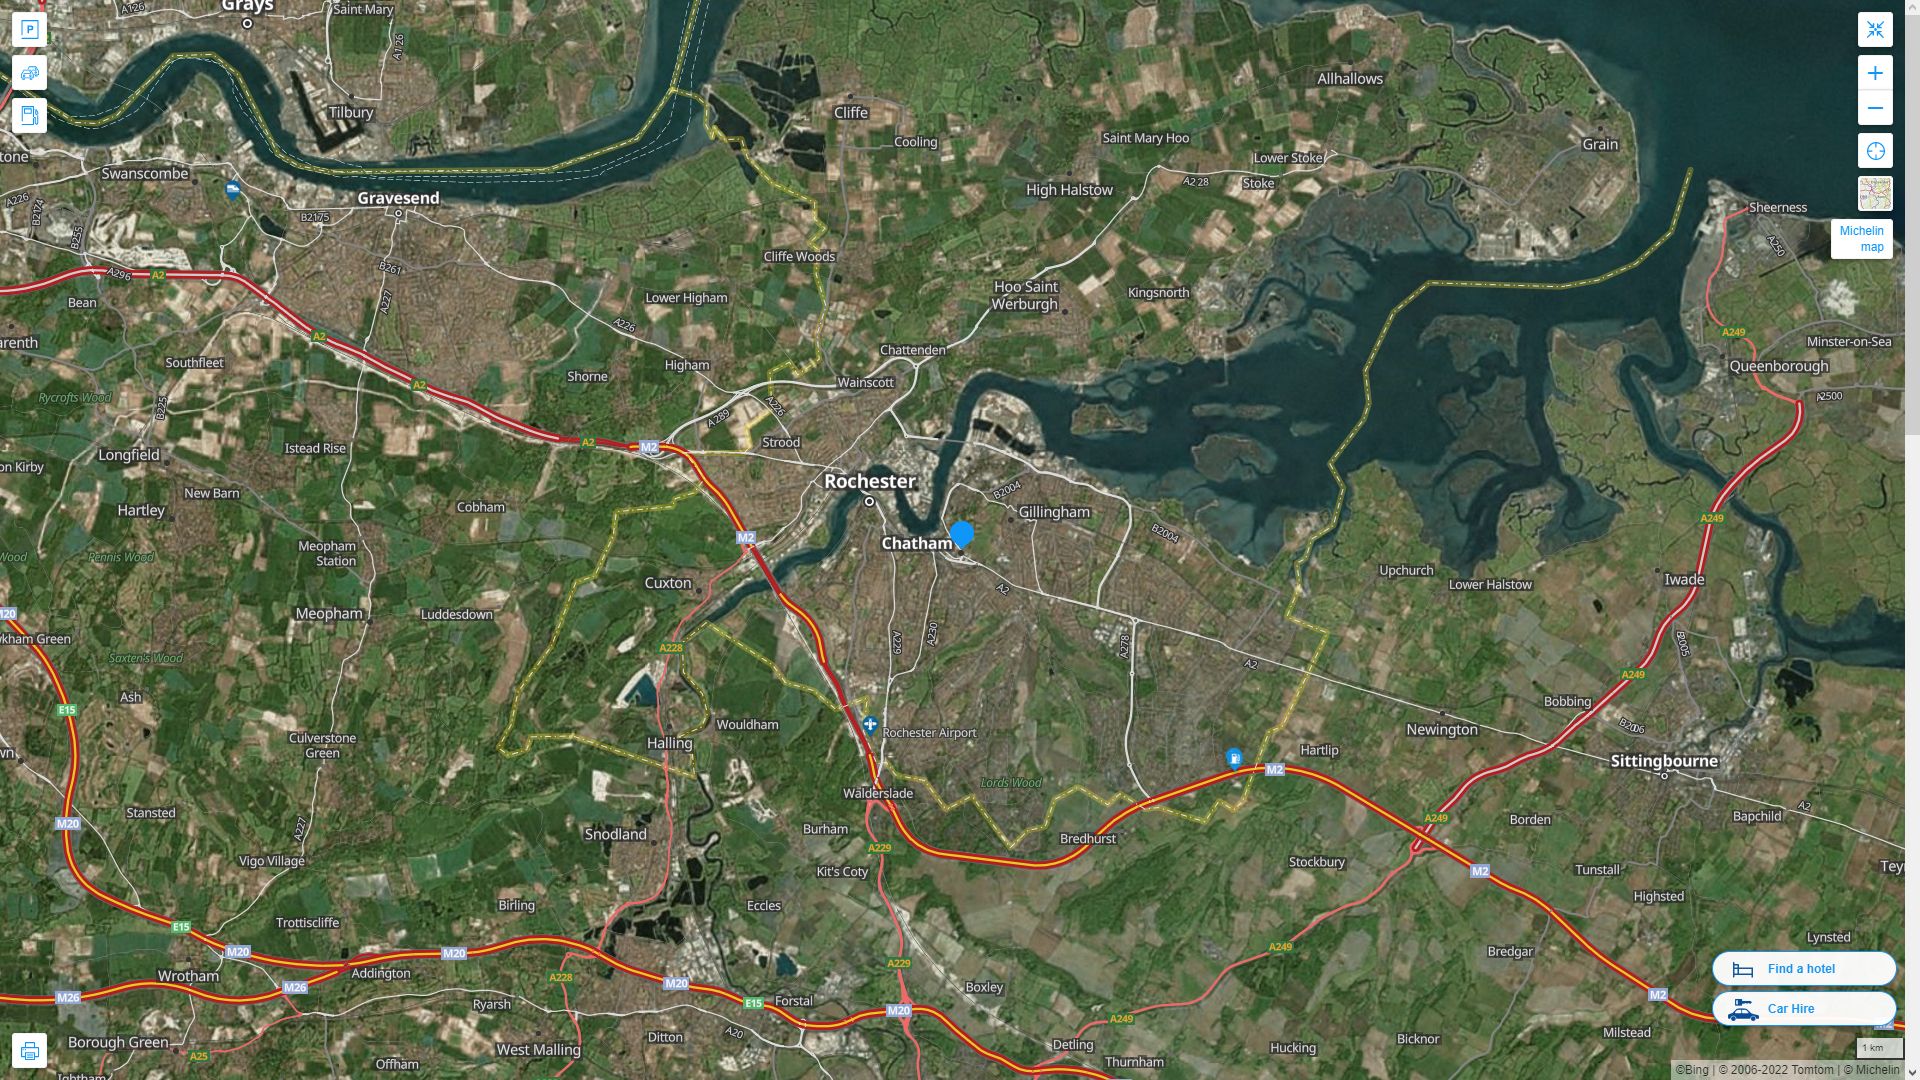 Chatham Royaume Uni Autoroute et carte routiere avec vue satellite